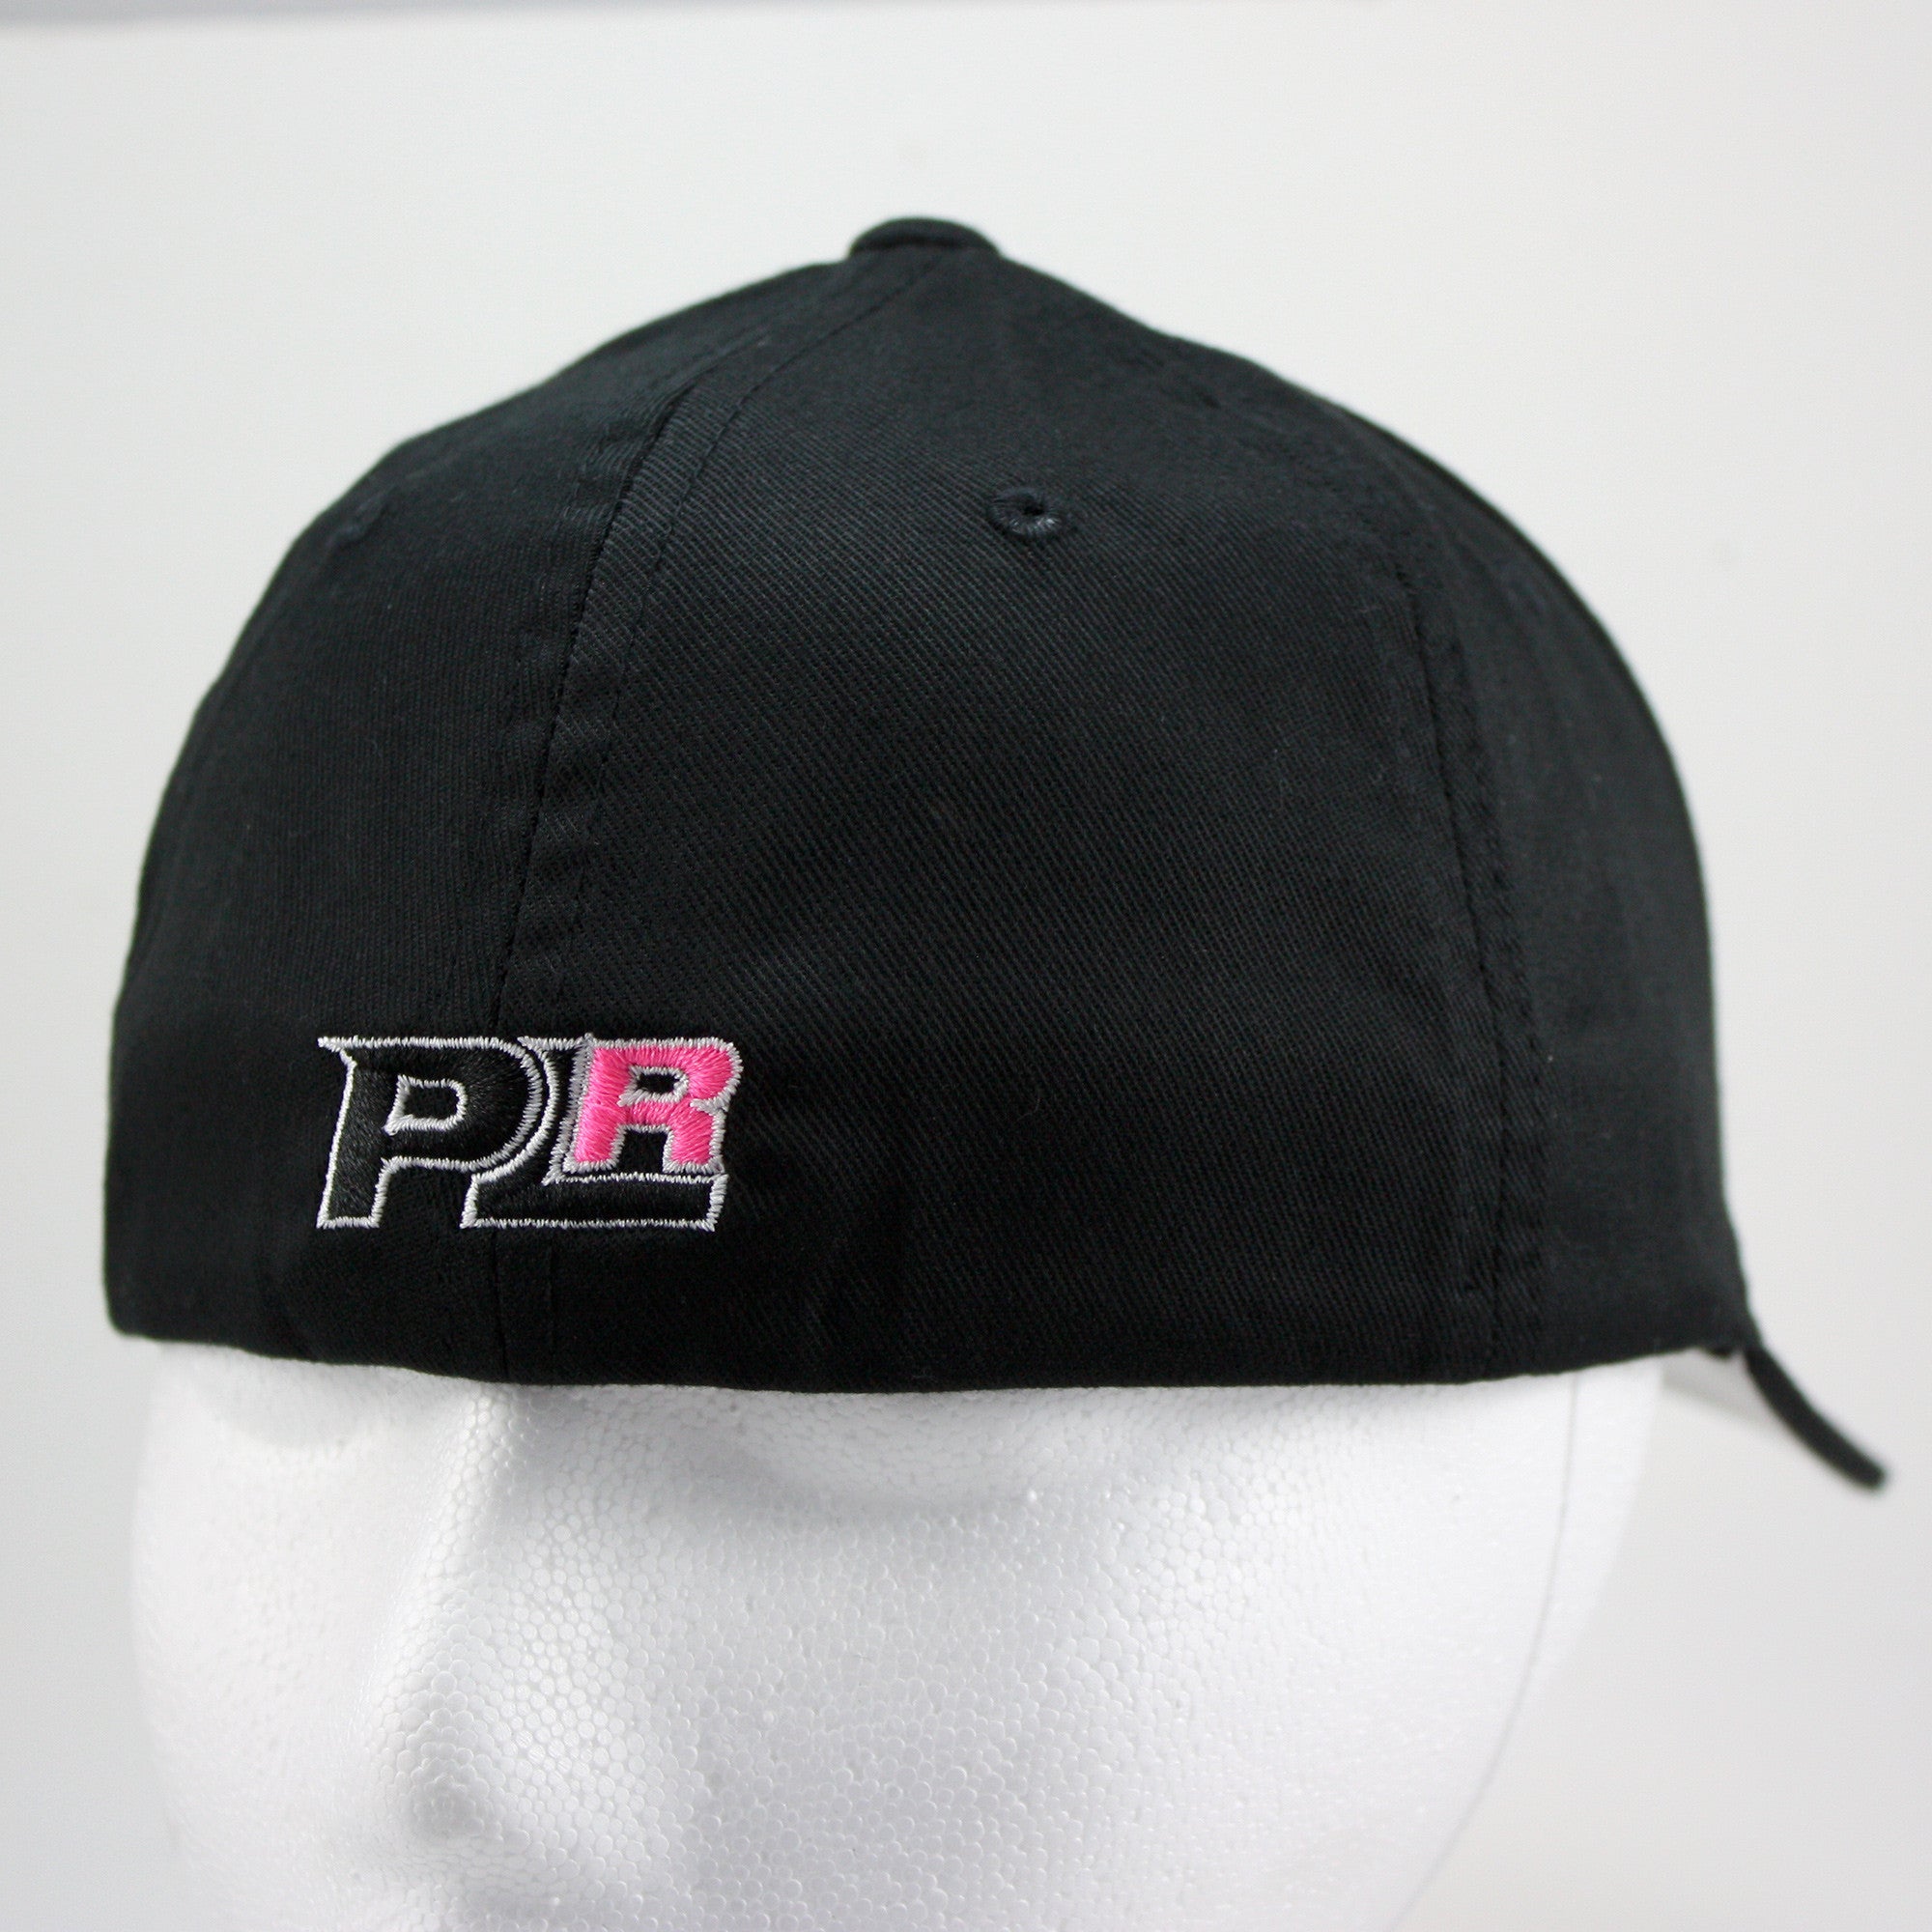 PLR LADIES FLEXFIT HAT - PINK  - Pro Line Racing - 1